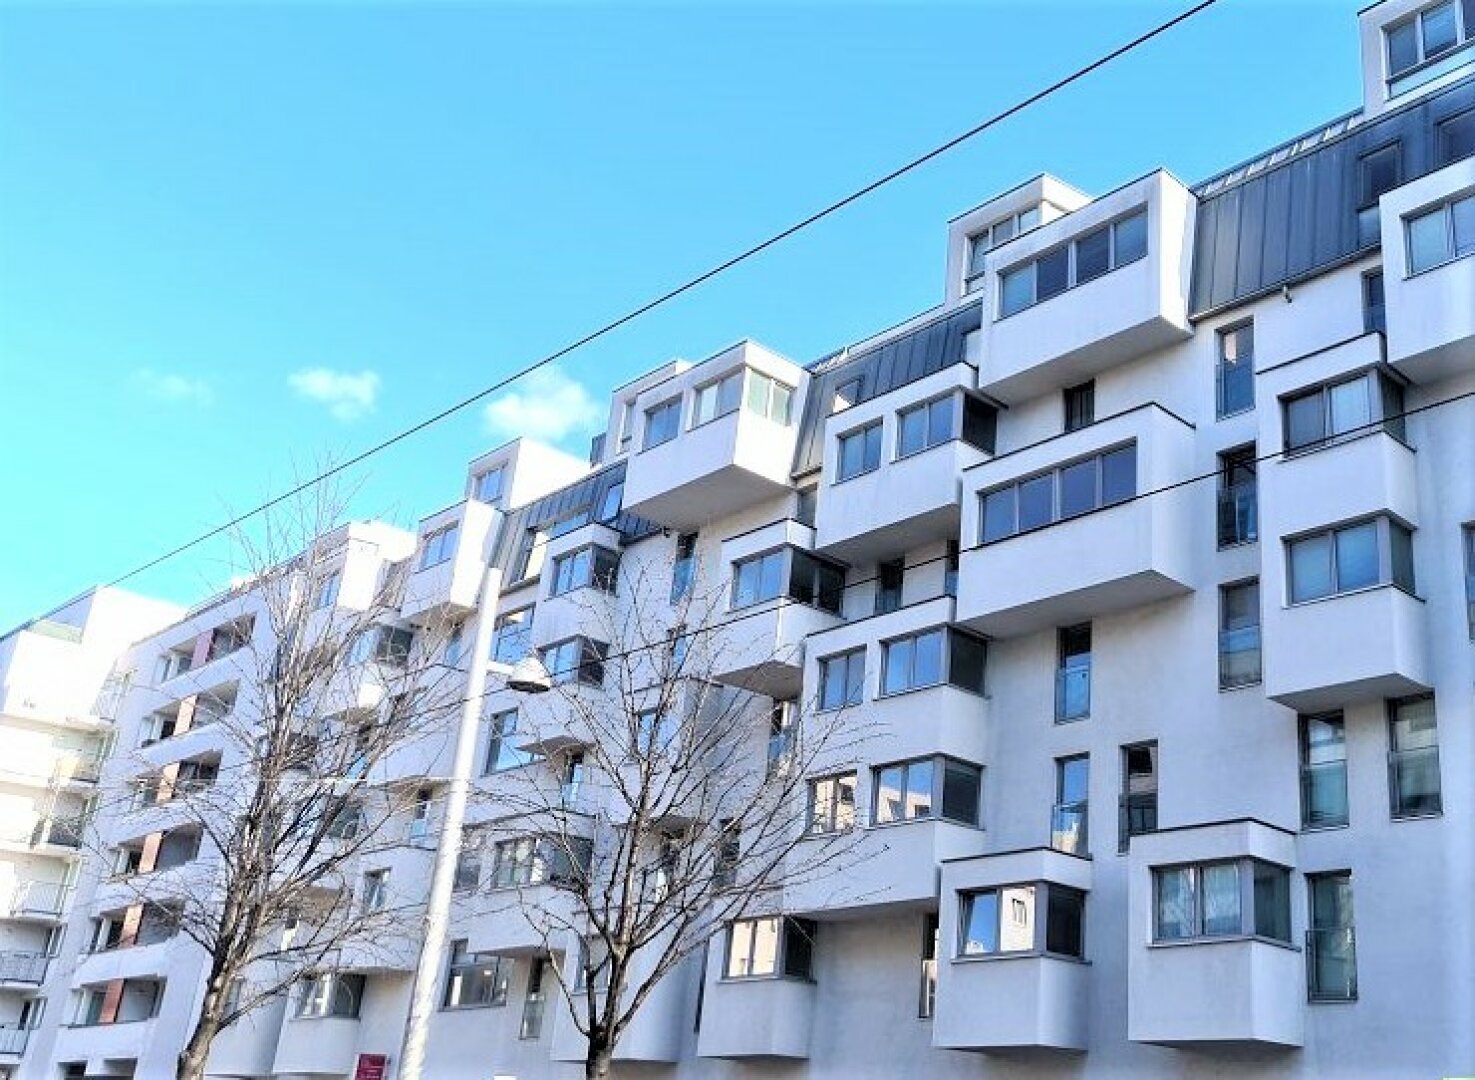 DONAUZENTRUM-NÄHE, Tokiostraße, 31 m² Apartment, Einzelwohnraum, Kochnische, Duschbad, 6. Liftstock, provisionsfrei